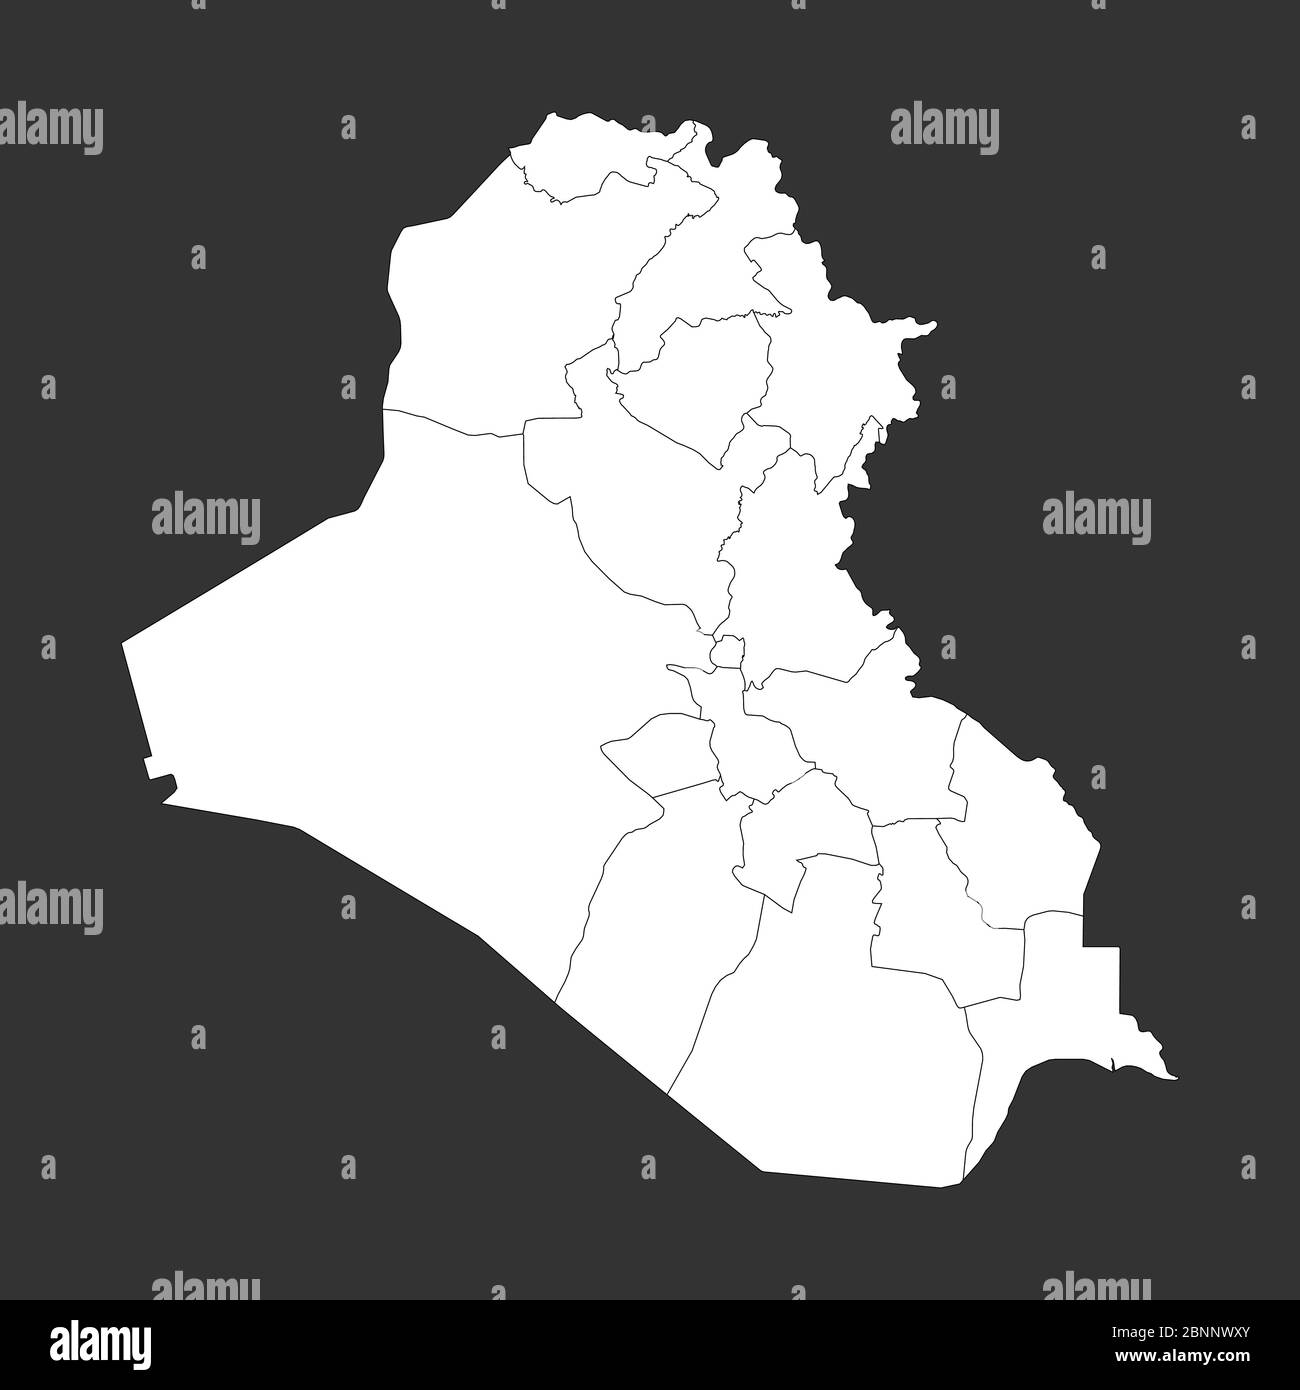 Mappa politica dell'Iraq con contorni vettoriali. Grigio, bianco. Illustrazione Vettoriale